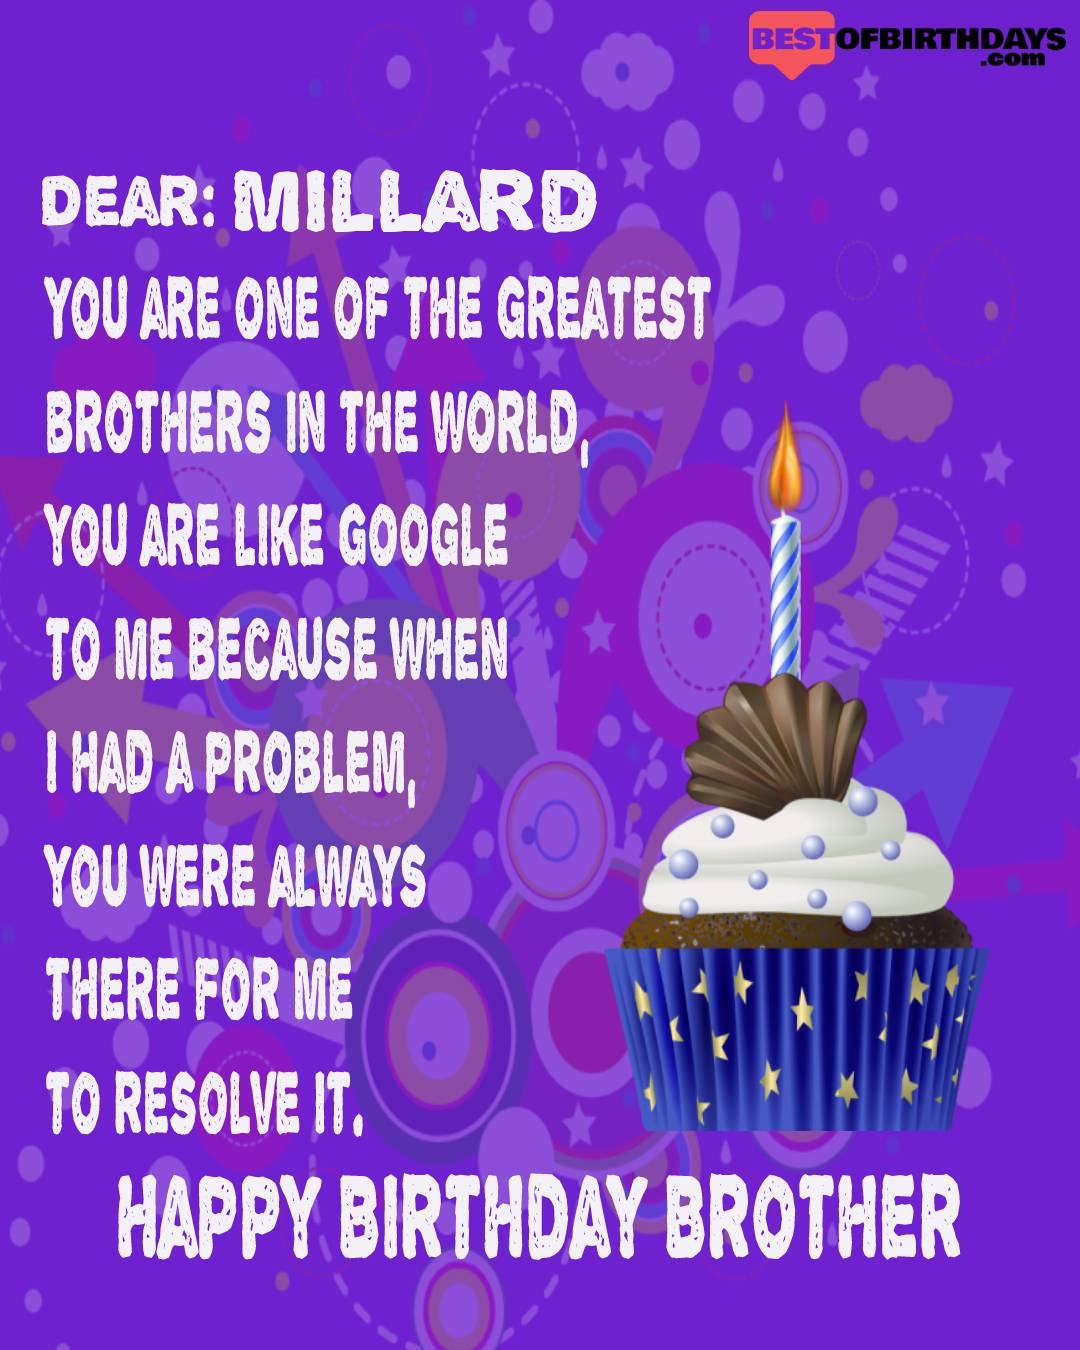 Happy birthday millard bhai brother bro